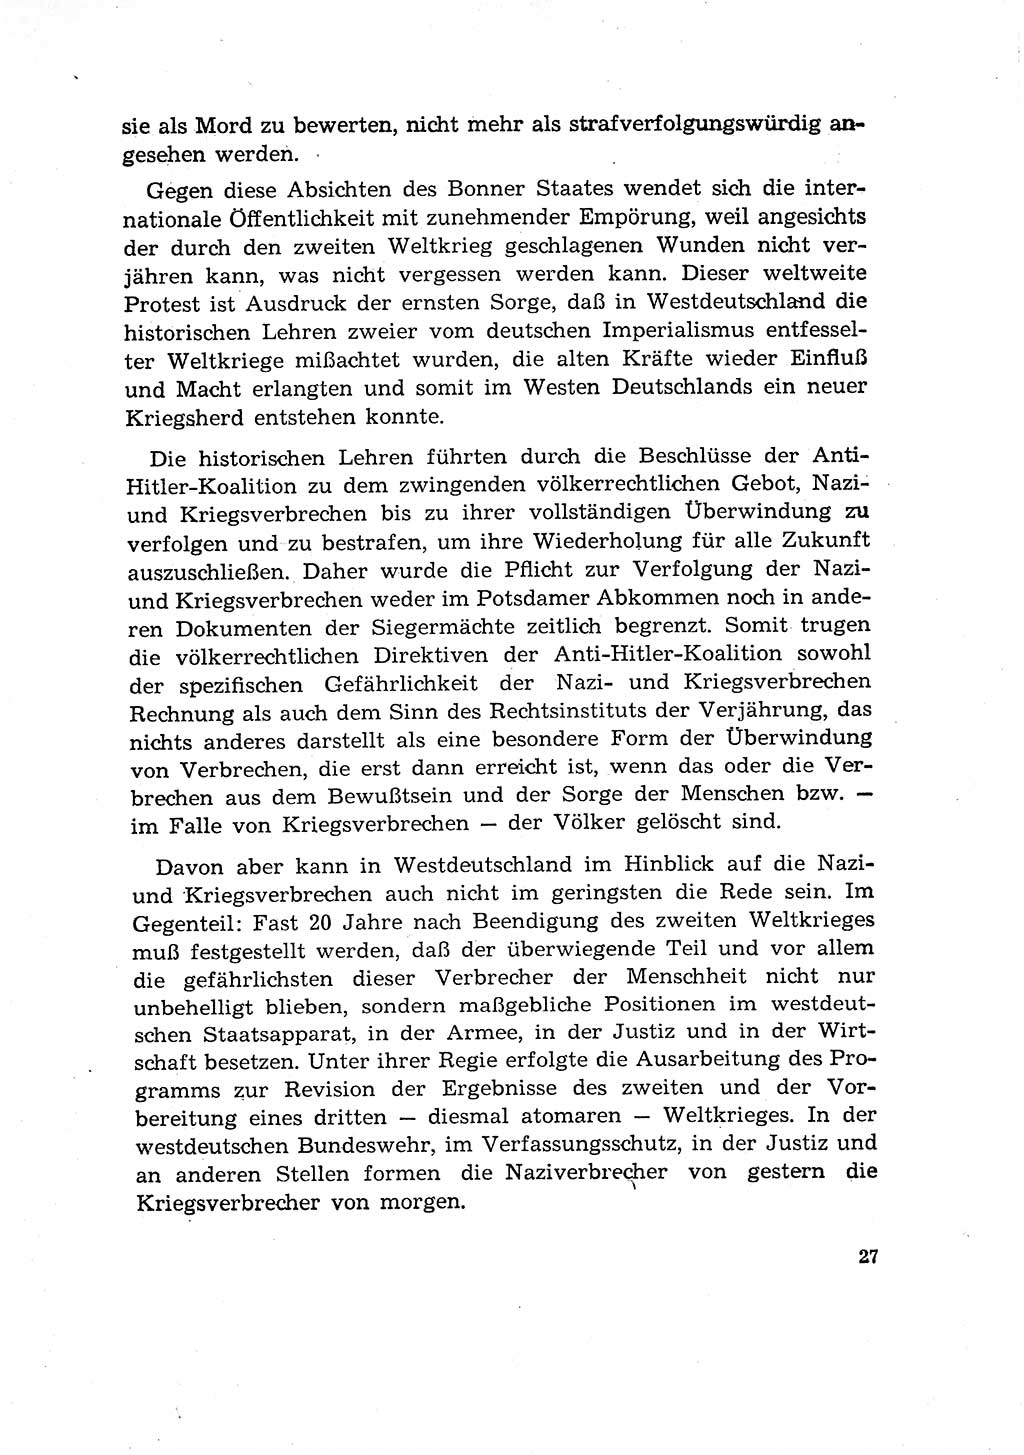 Bestrafung der Nazi- und Kriegsverbrecher [Deutsche Demokratische Republik (DDR)] 1964, Seite 27 (Bestr. Nazi-Kr.-Verbr. DDR 1964, S. 27)